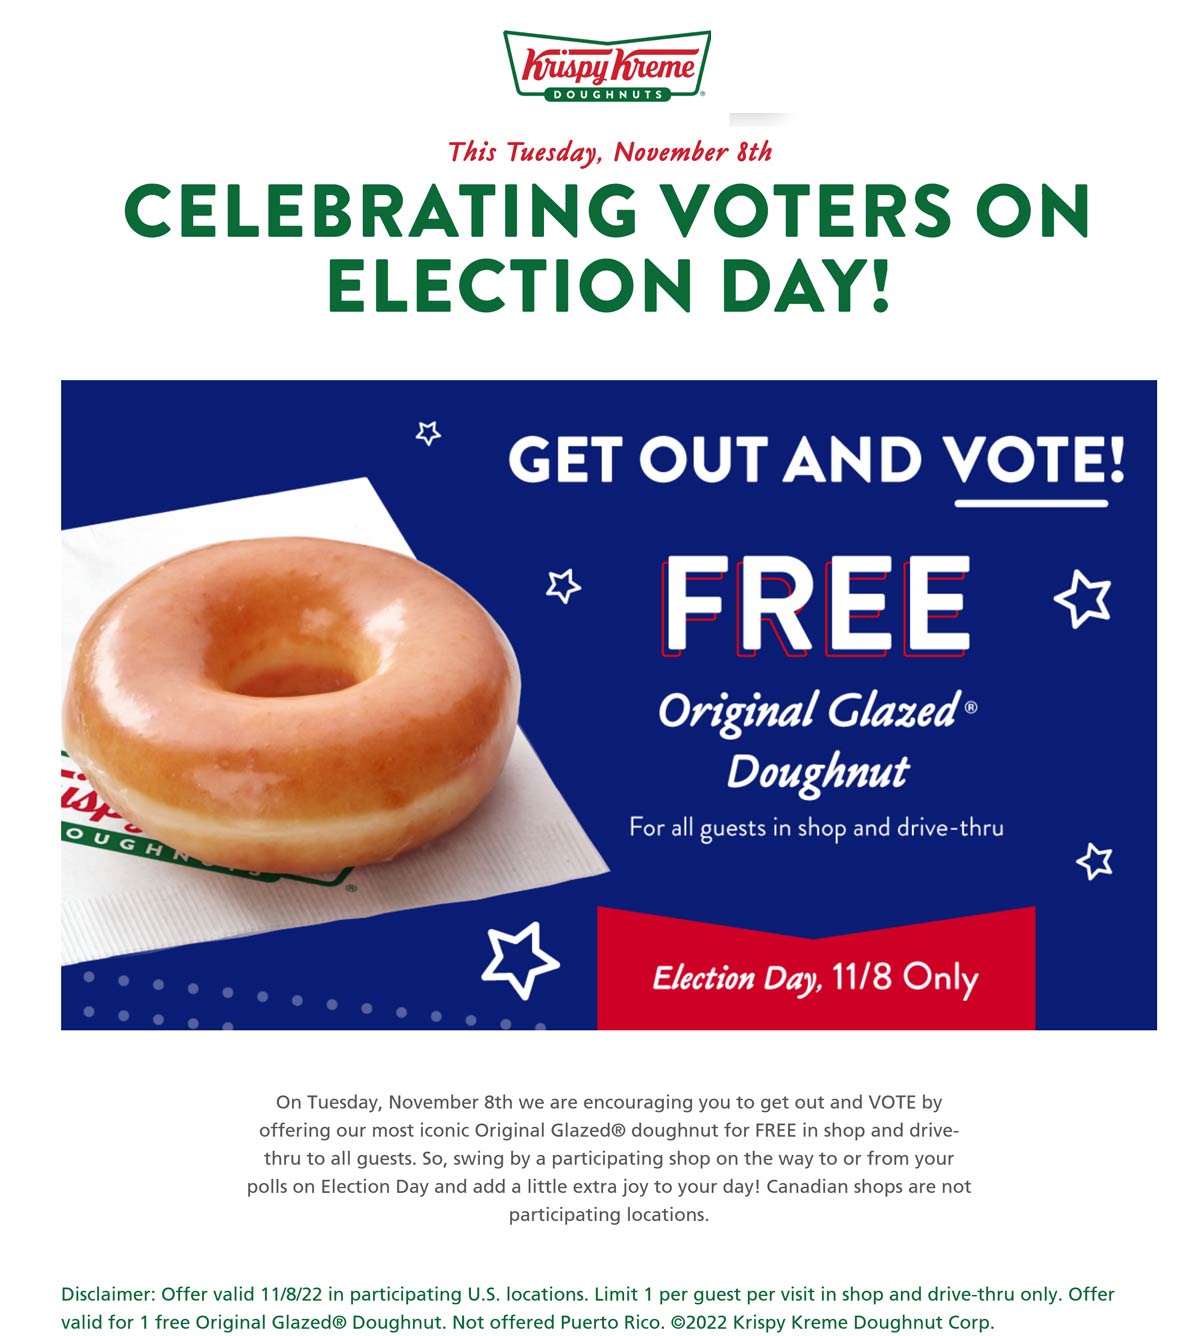 Krispy Kreme restaurants Coupon  Free glazed doughnut just for voting Tuesday at Krispy Kreme #krispykreme 